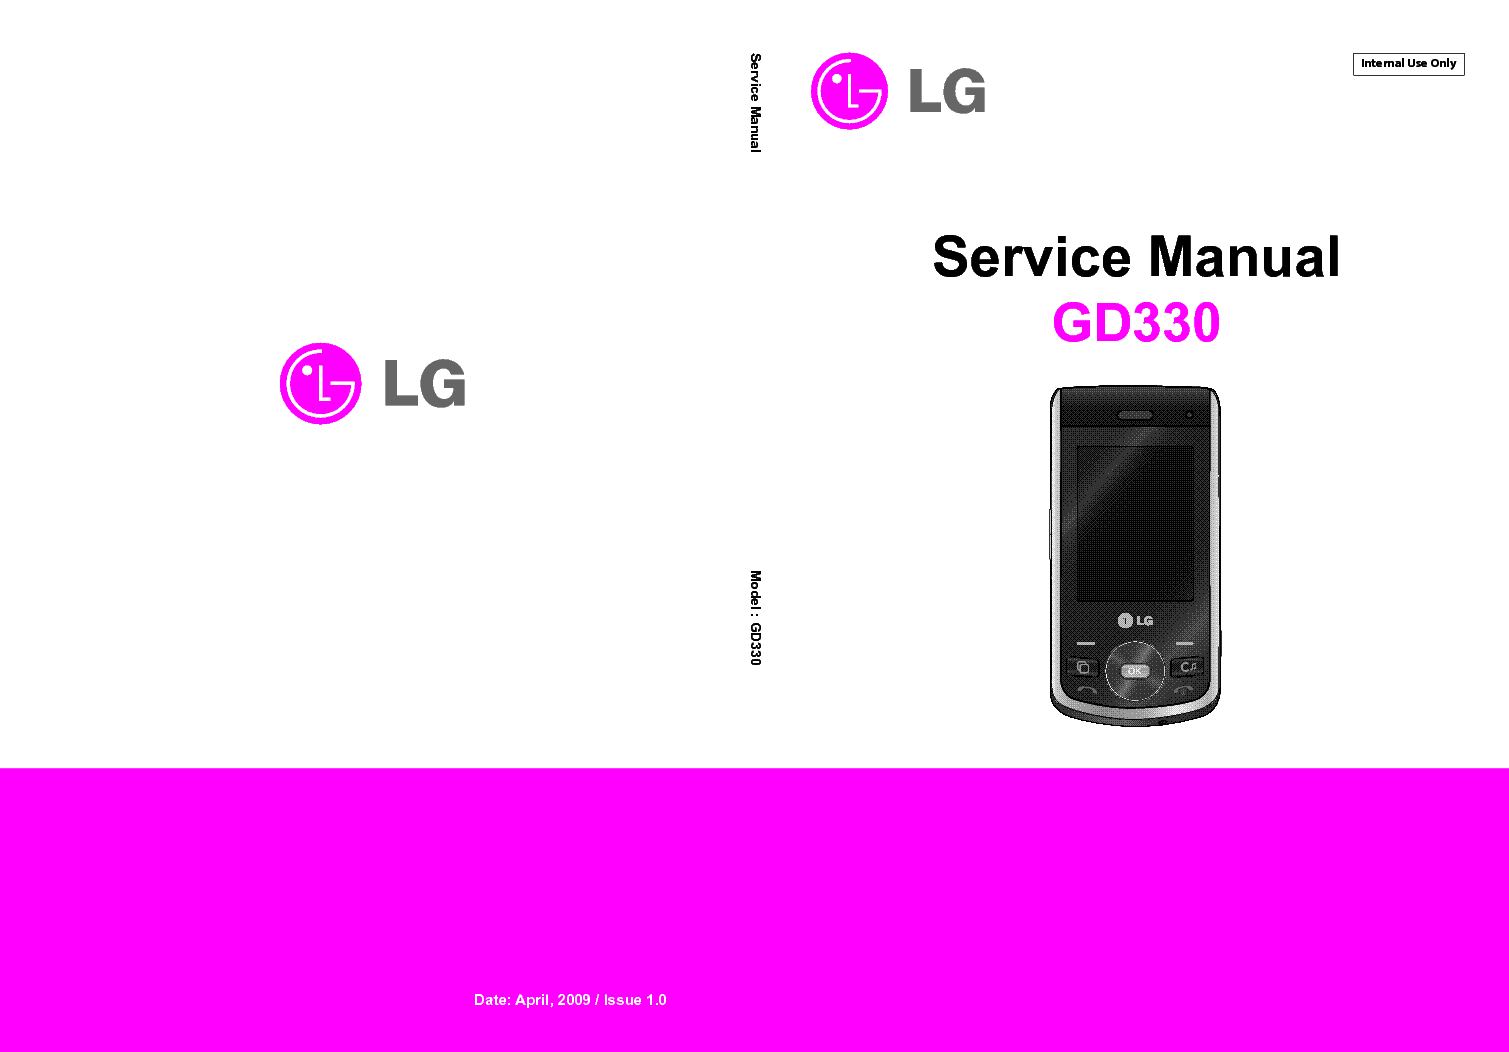 Lg gd330 инструкция скачать